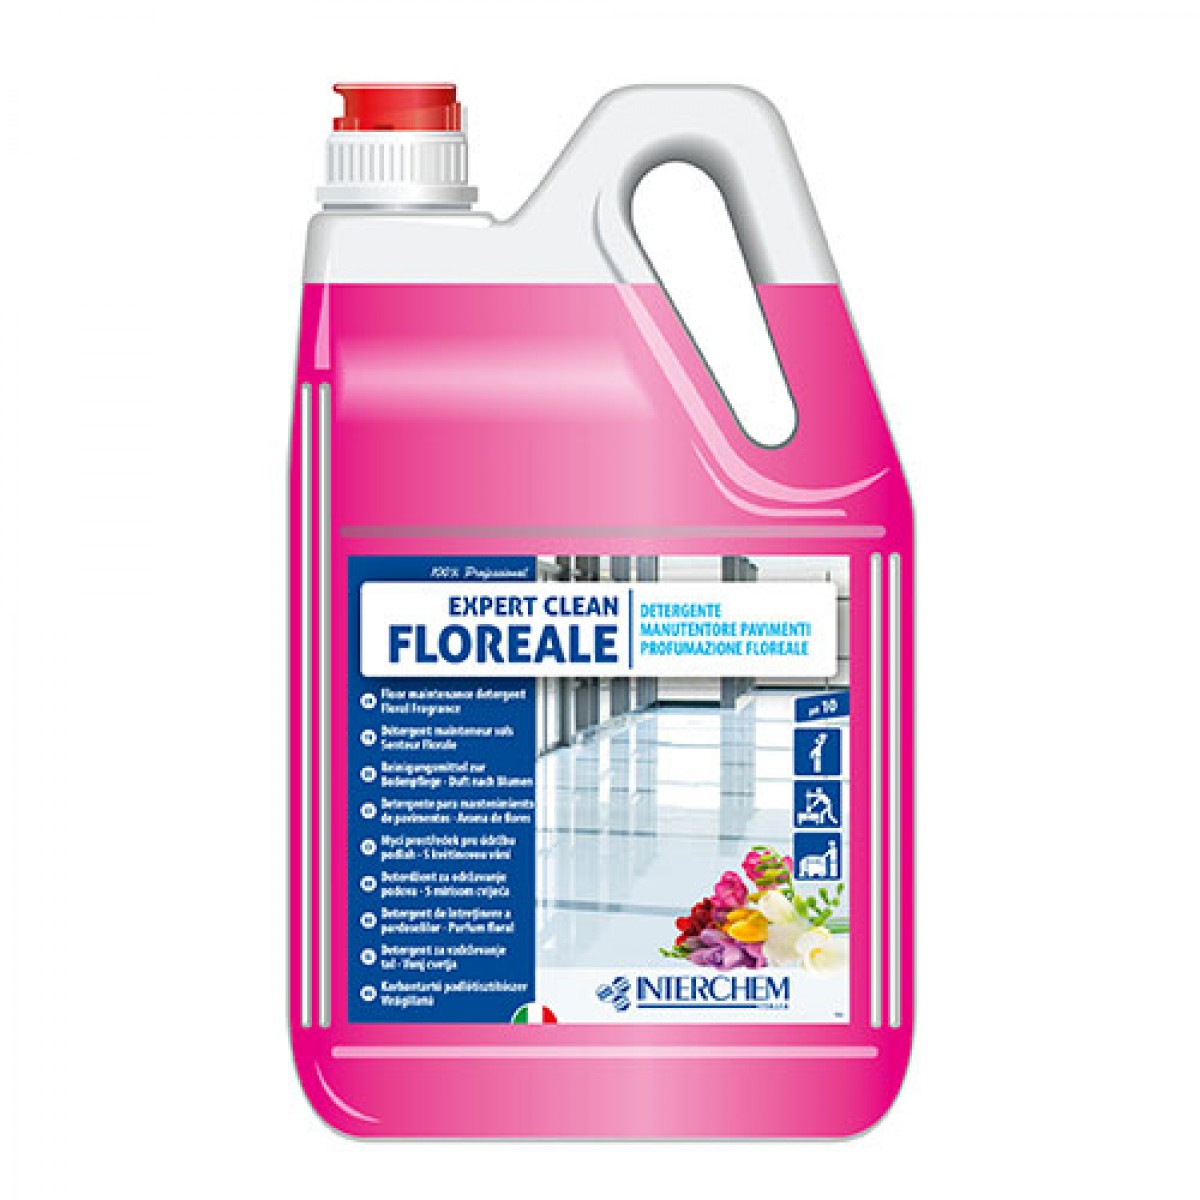 EXPERT CLEAN - 5 lit / Miris cvijeća / Univerzalno sredstvo
za čišćenje svih tvrdih površina